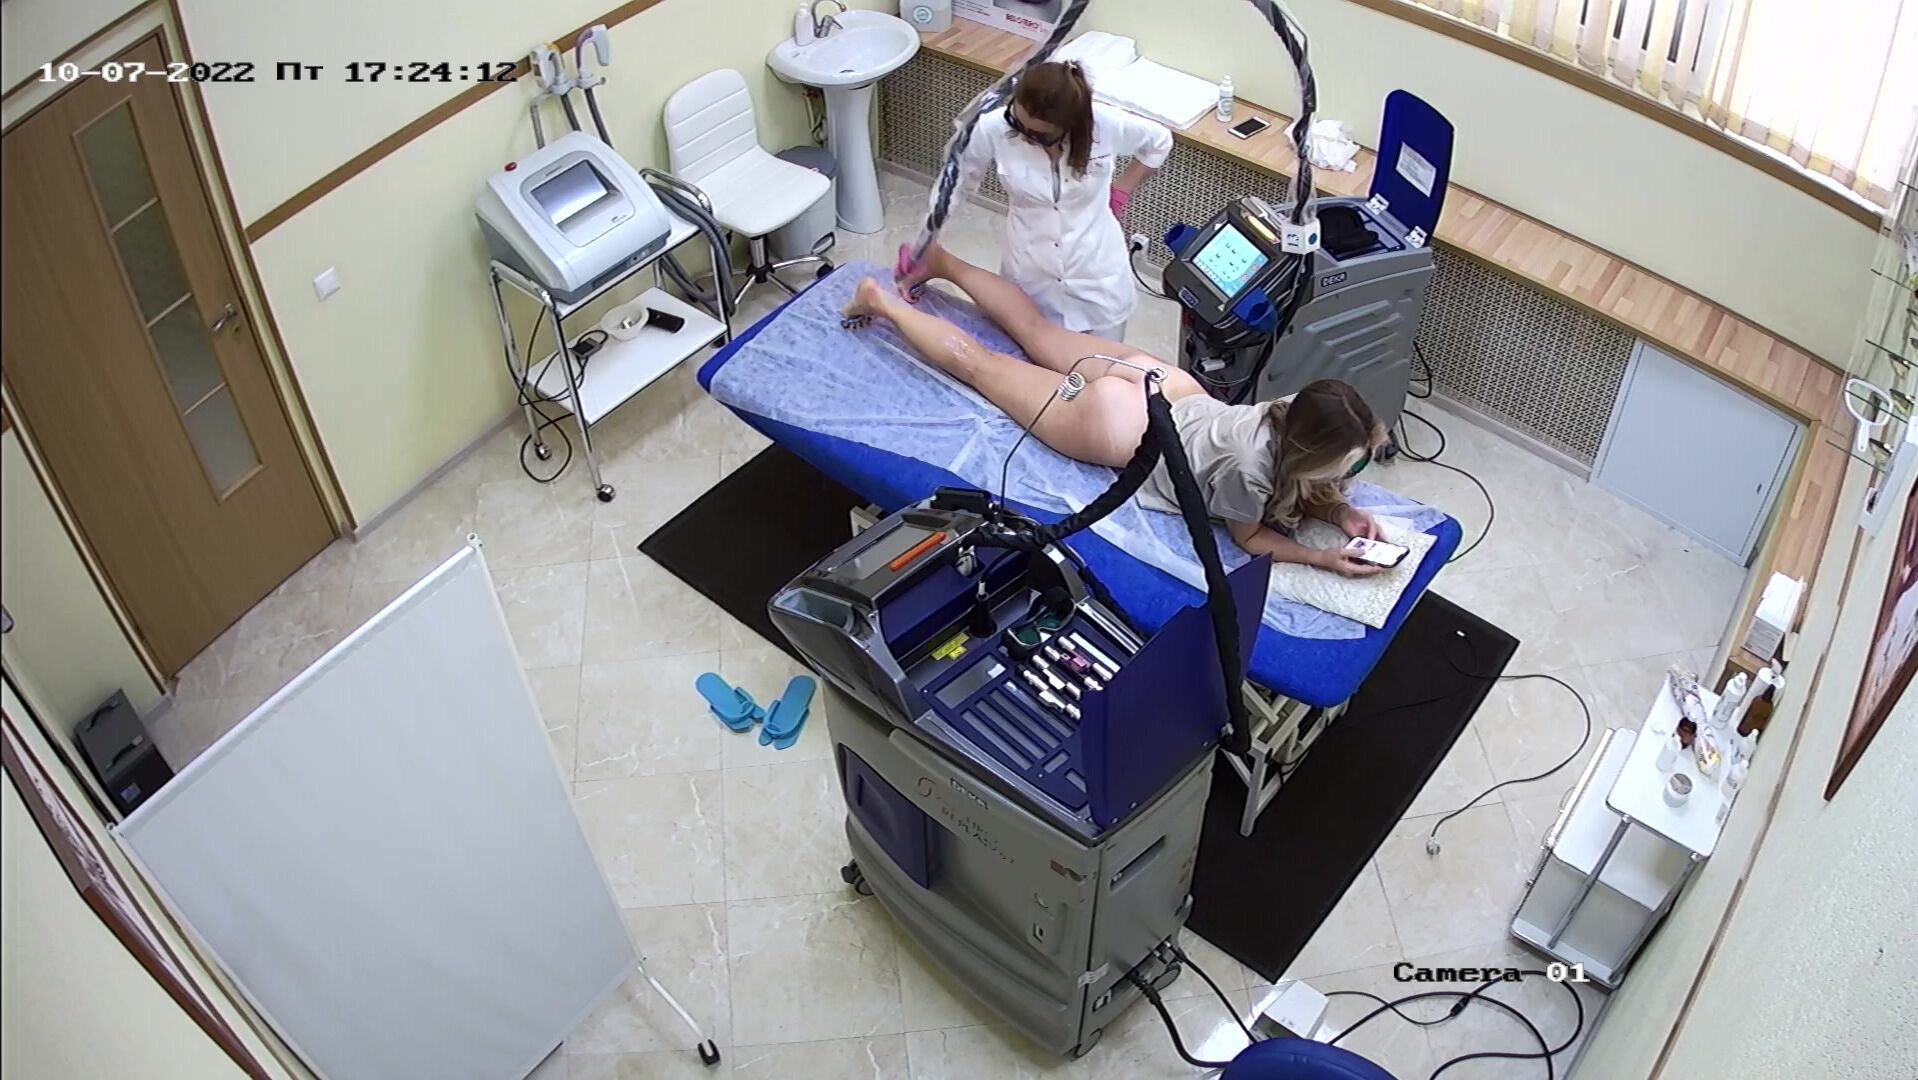 Medical fetish webcam